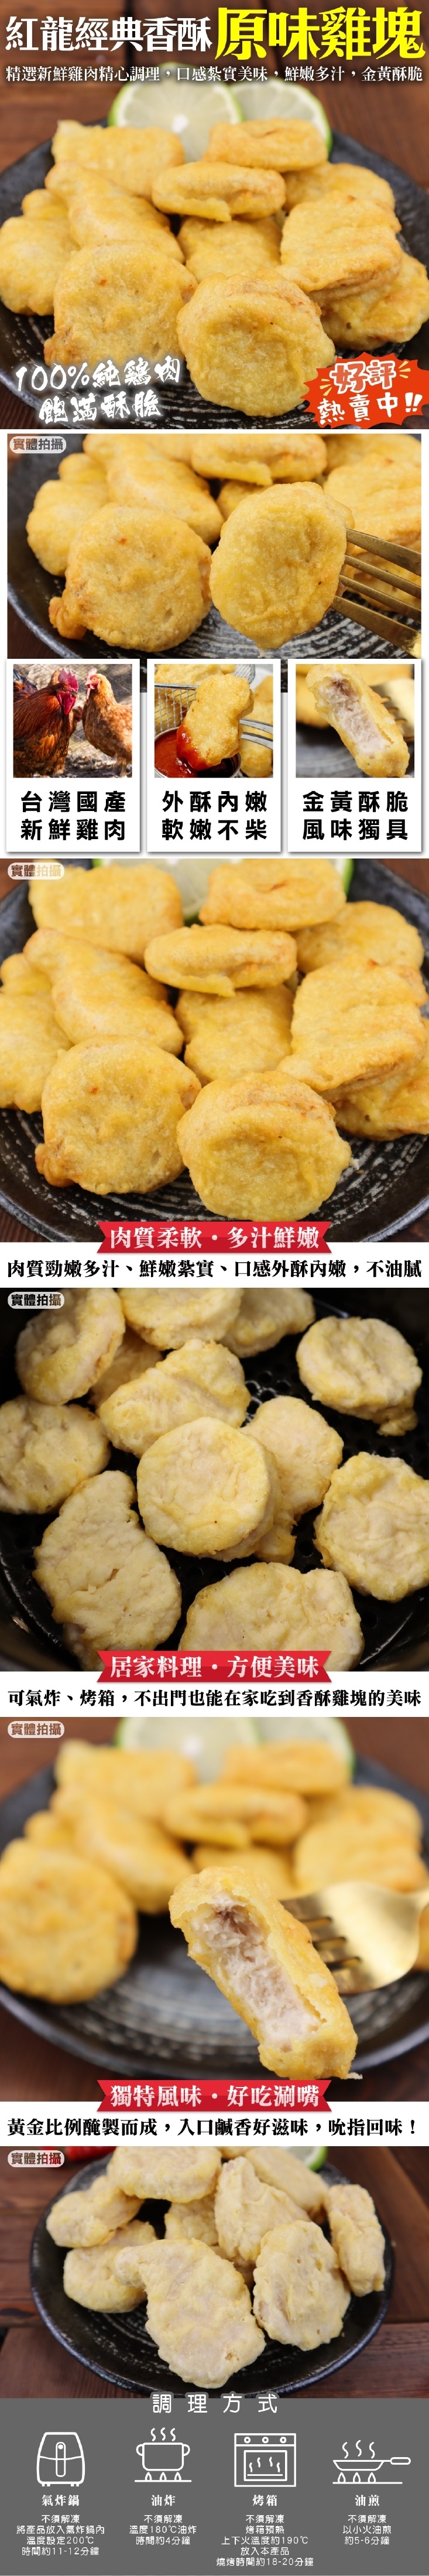 【三頓飯】紅龍經典原味雞塊1kg